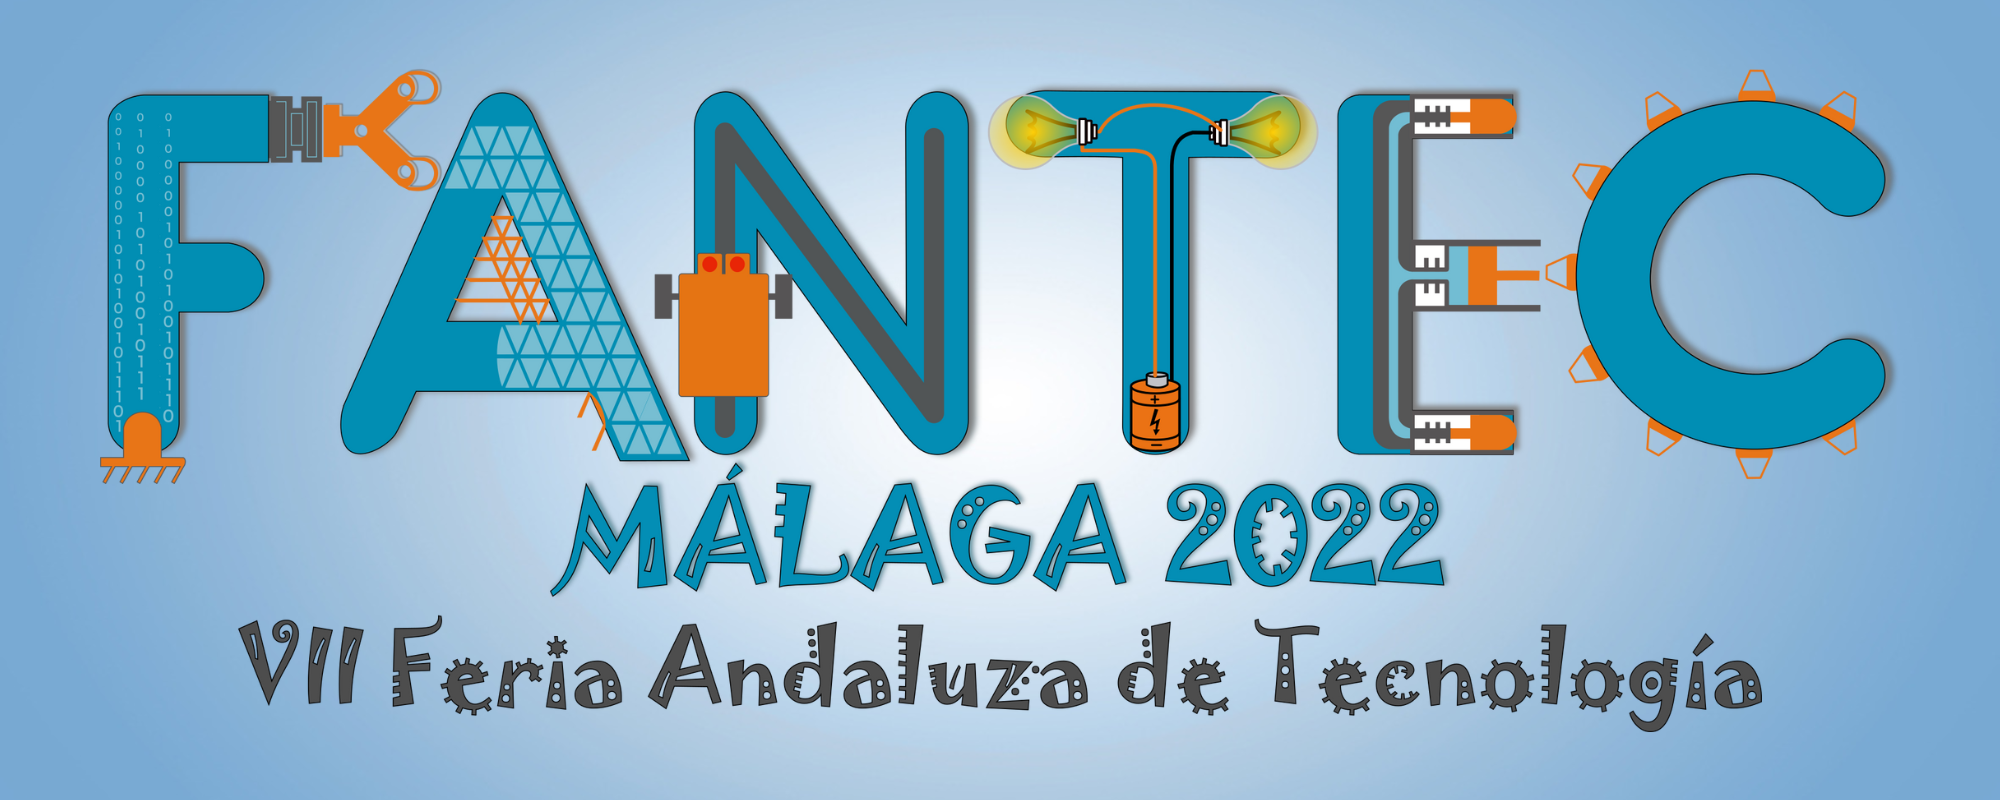 FANTEC 2022 – VII Feria Andaluza de Tecnología